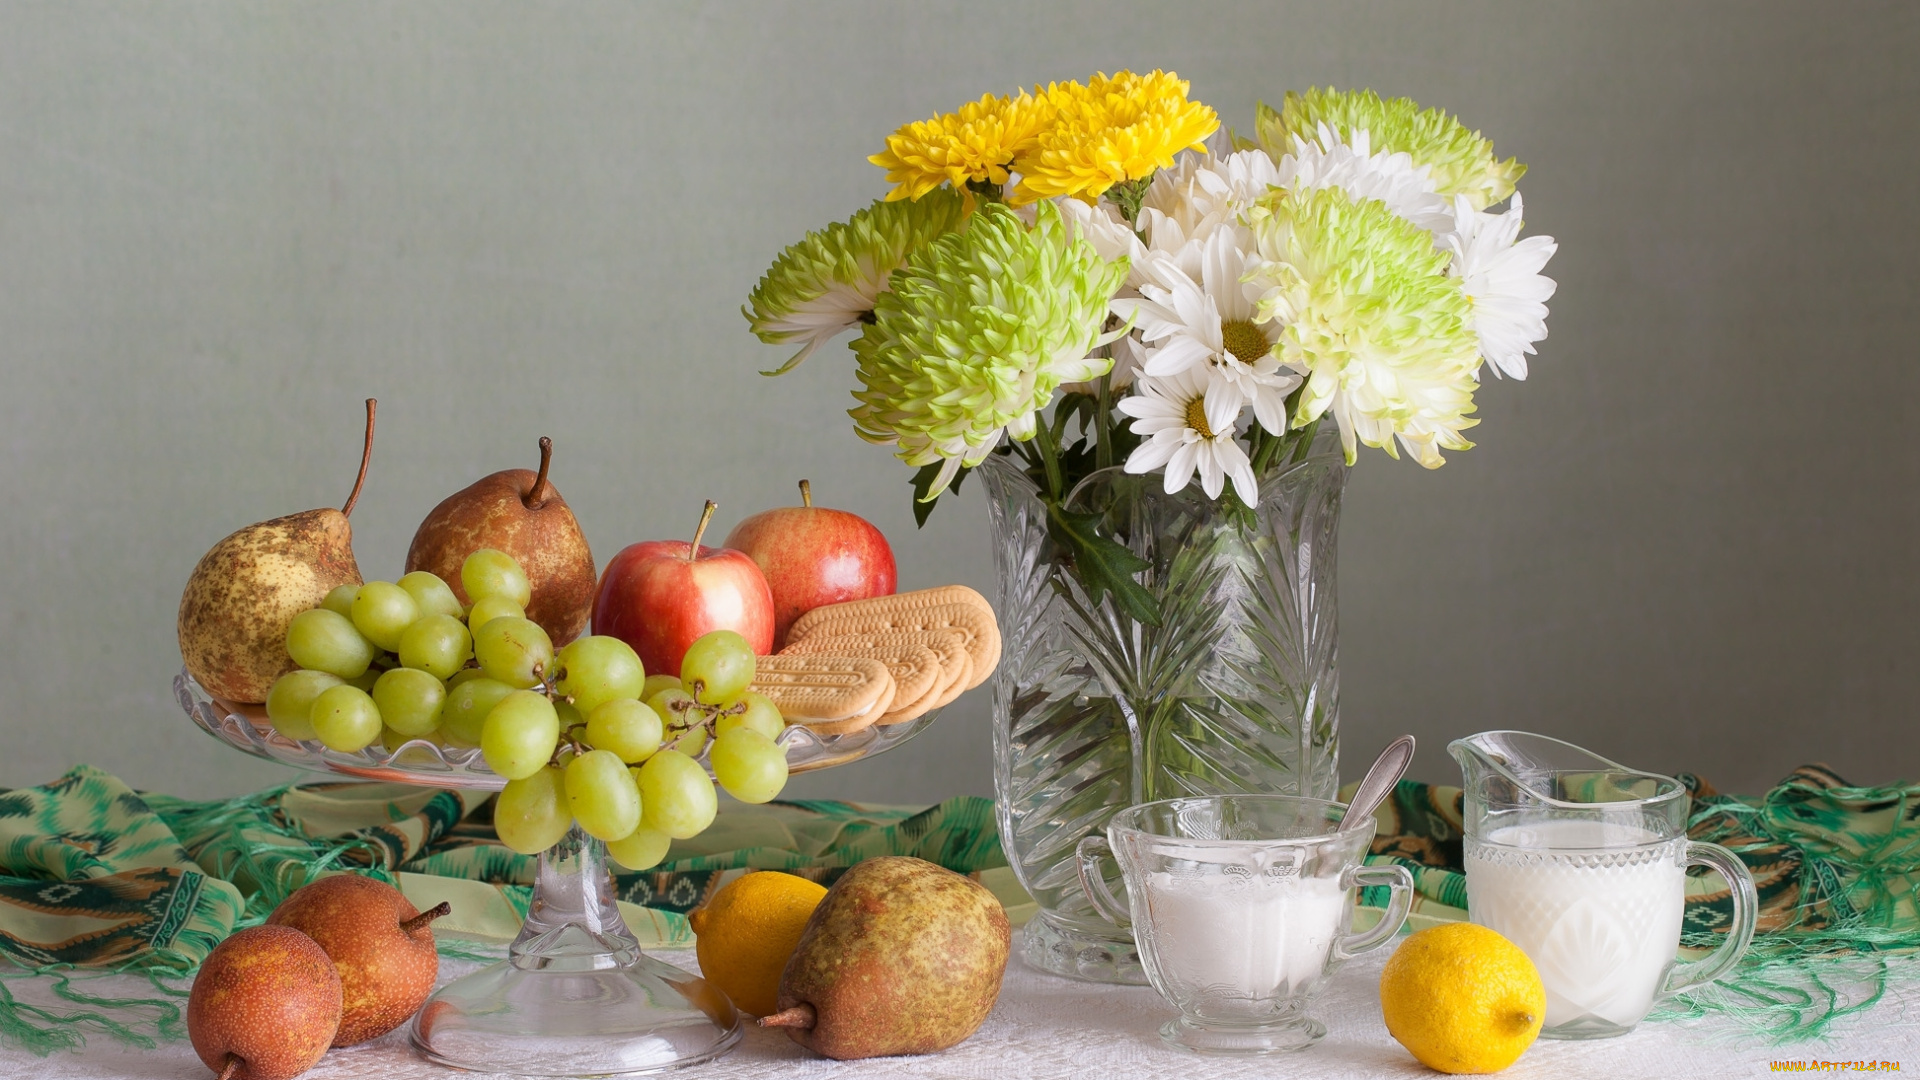 еда, натюрморт, печенье, фрукты, лимон, цветы, хризантемы, букет, яблоко, виноград, груши